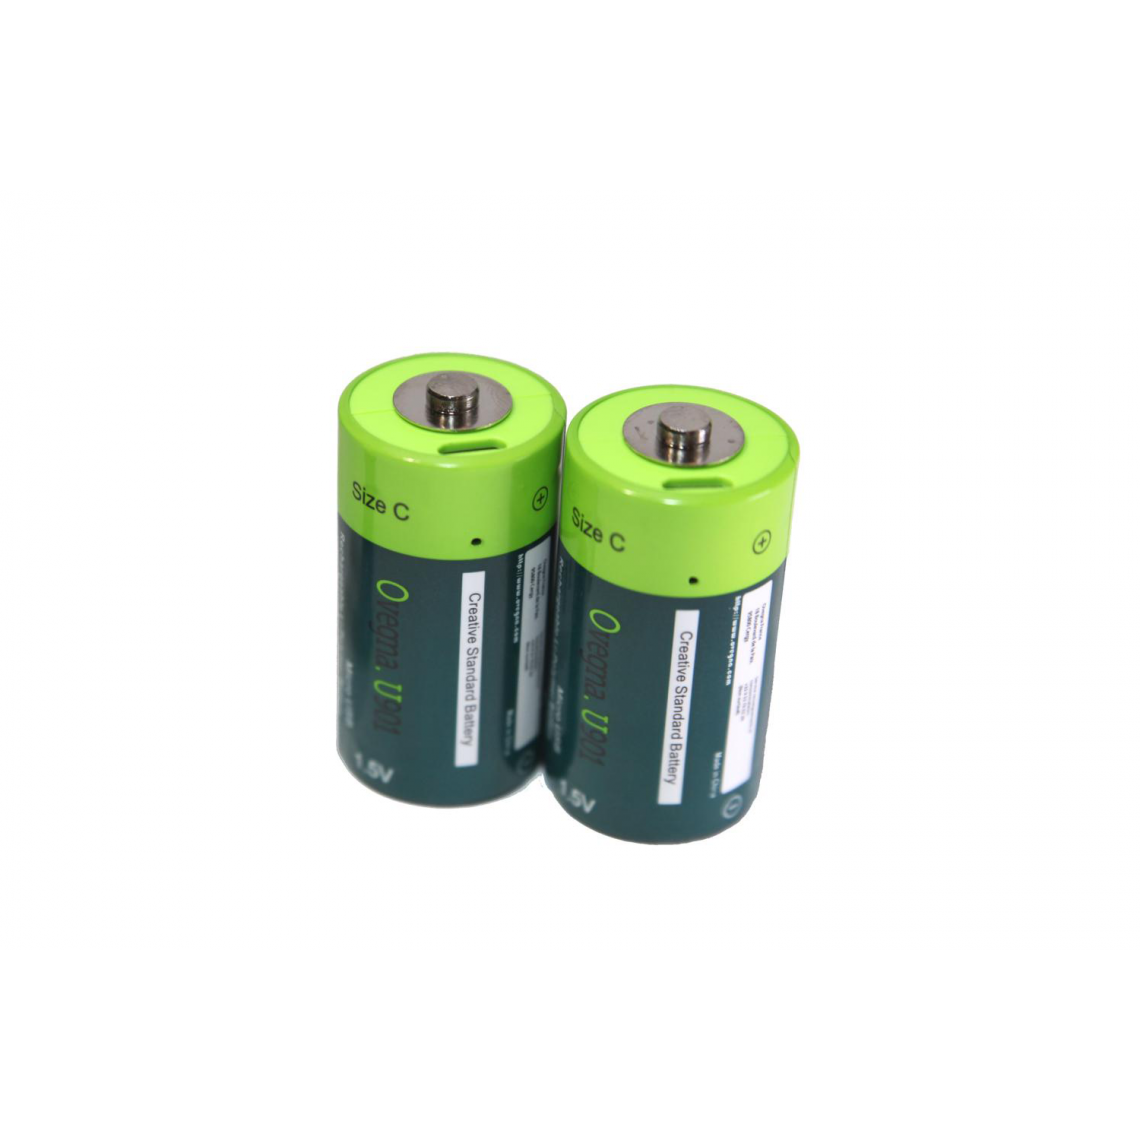 Ovegna - Ovegna U901 : Piles C légères, en Lithium-ION (Non NiMH, Non alcalines), 3000 mAh, Rechargeables par entrée Micro USB - Piles rechargeables